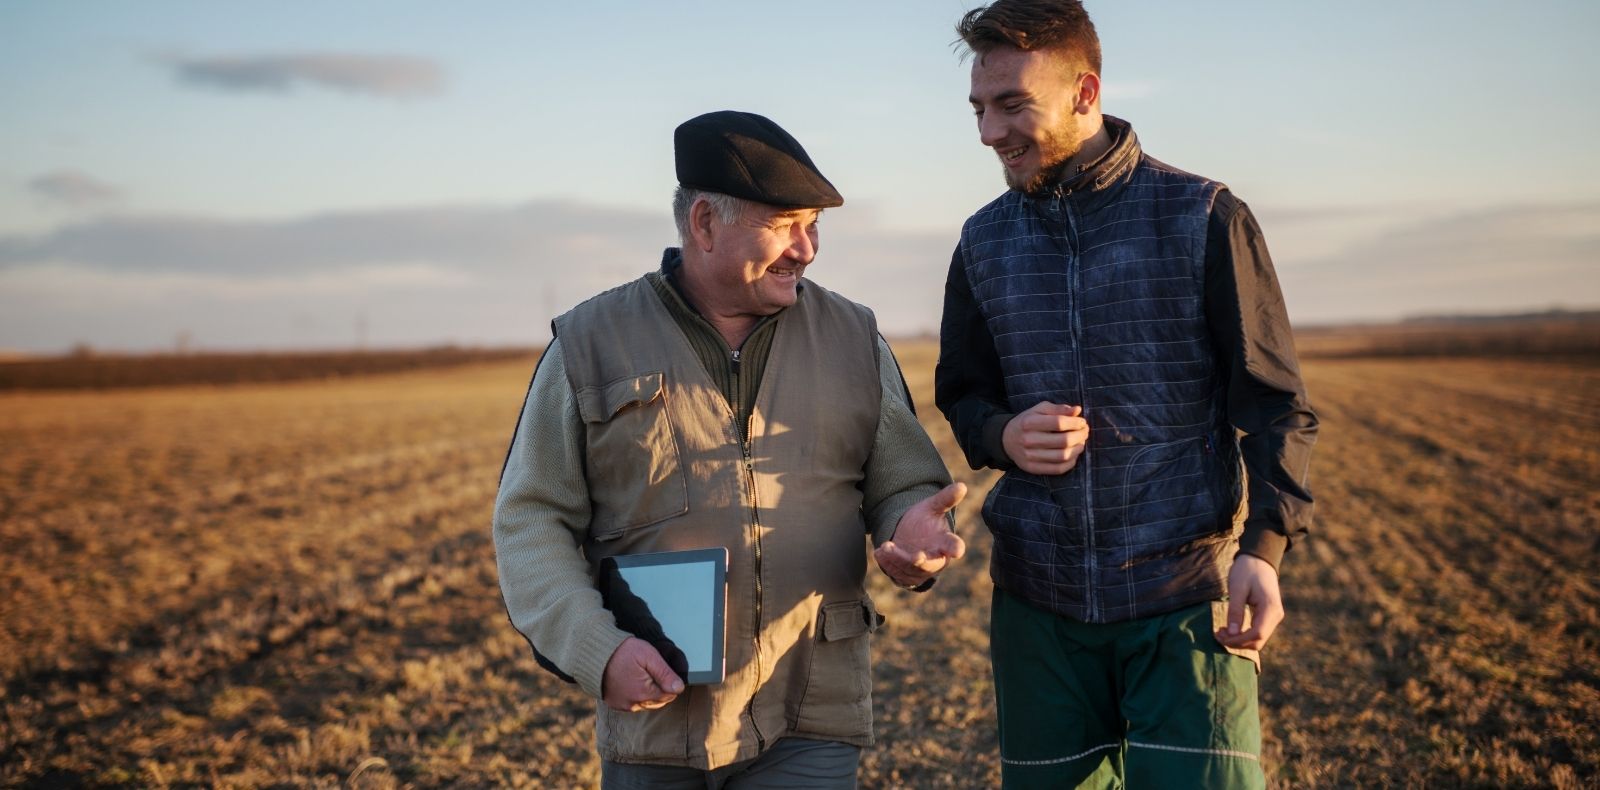 Two men standing in a field